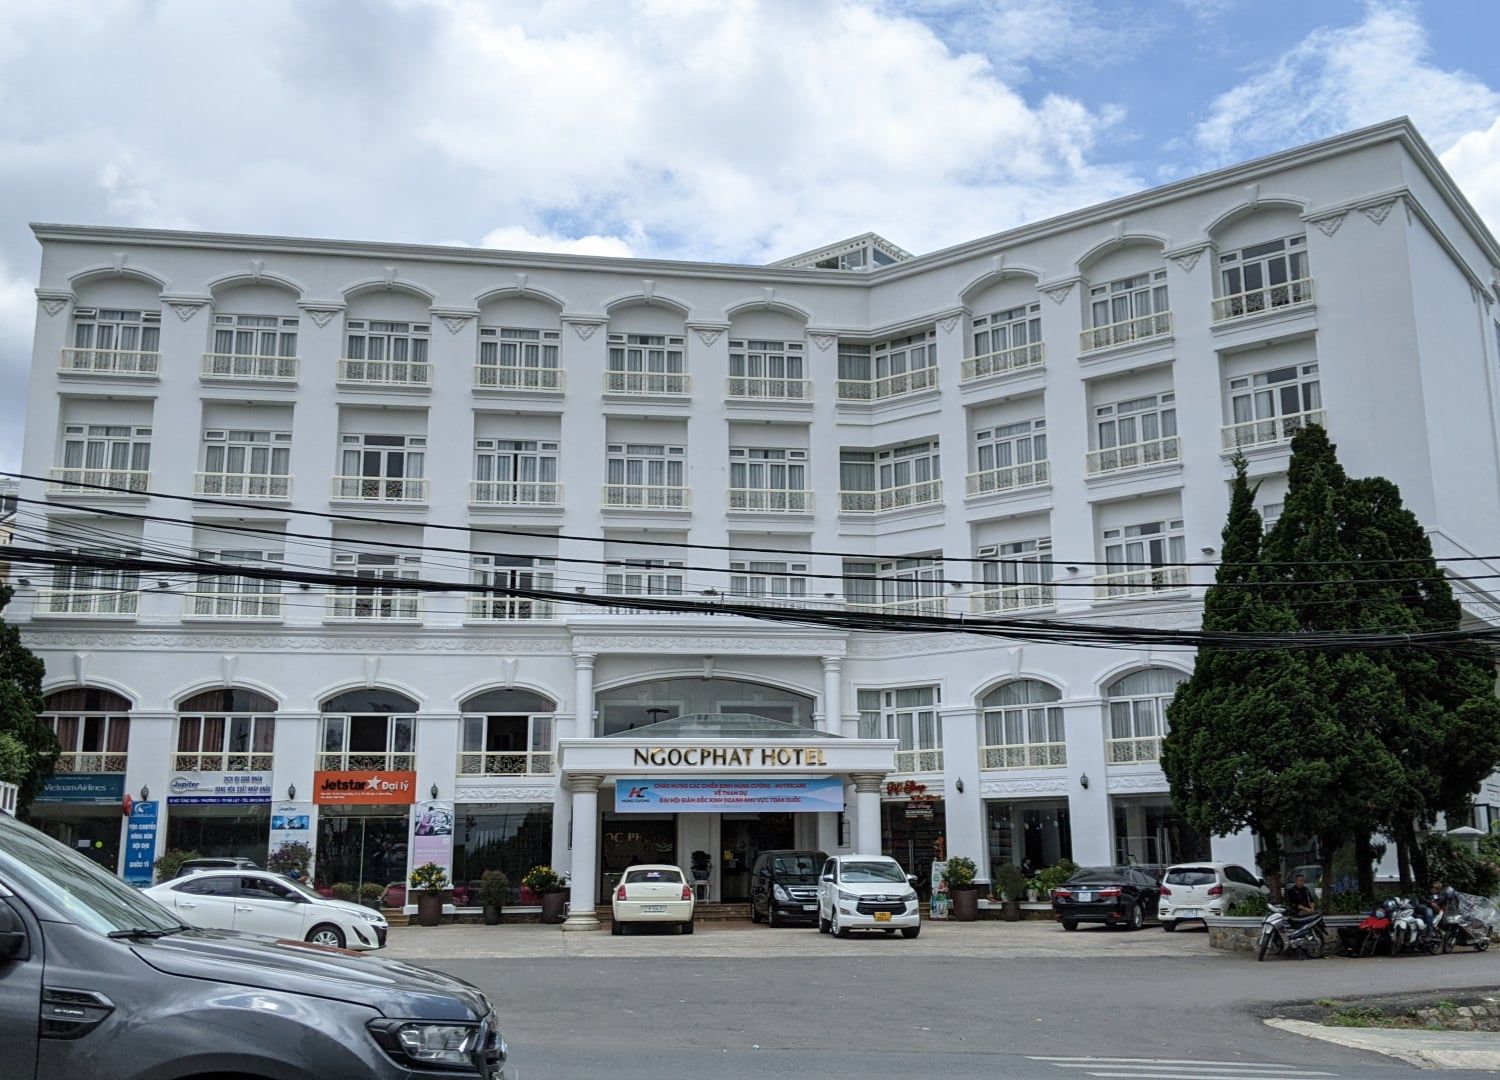 Ngoc Phat Dalat Hotel, dáng vẻ trang nhã giữa thành phố thơ mộng 2